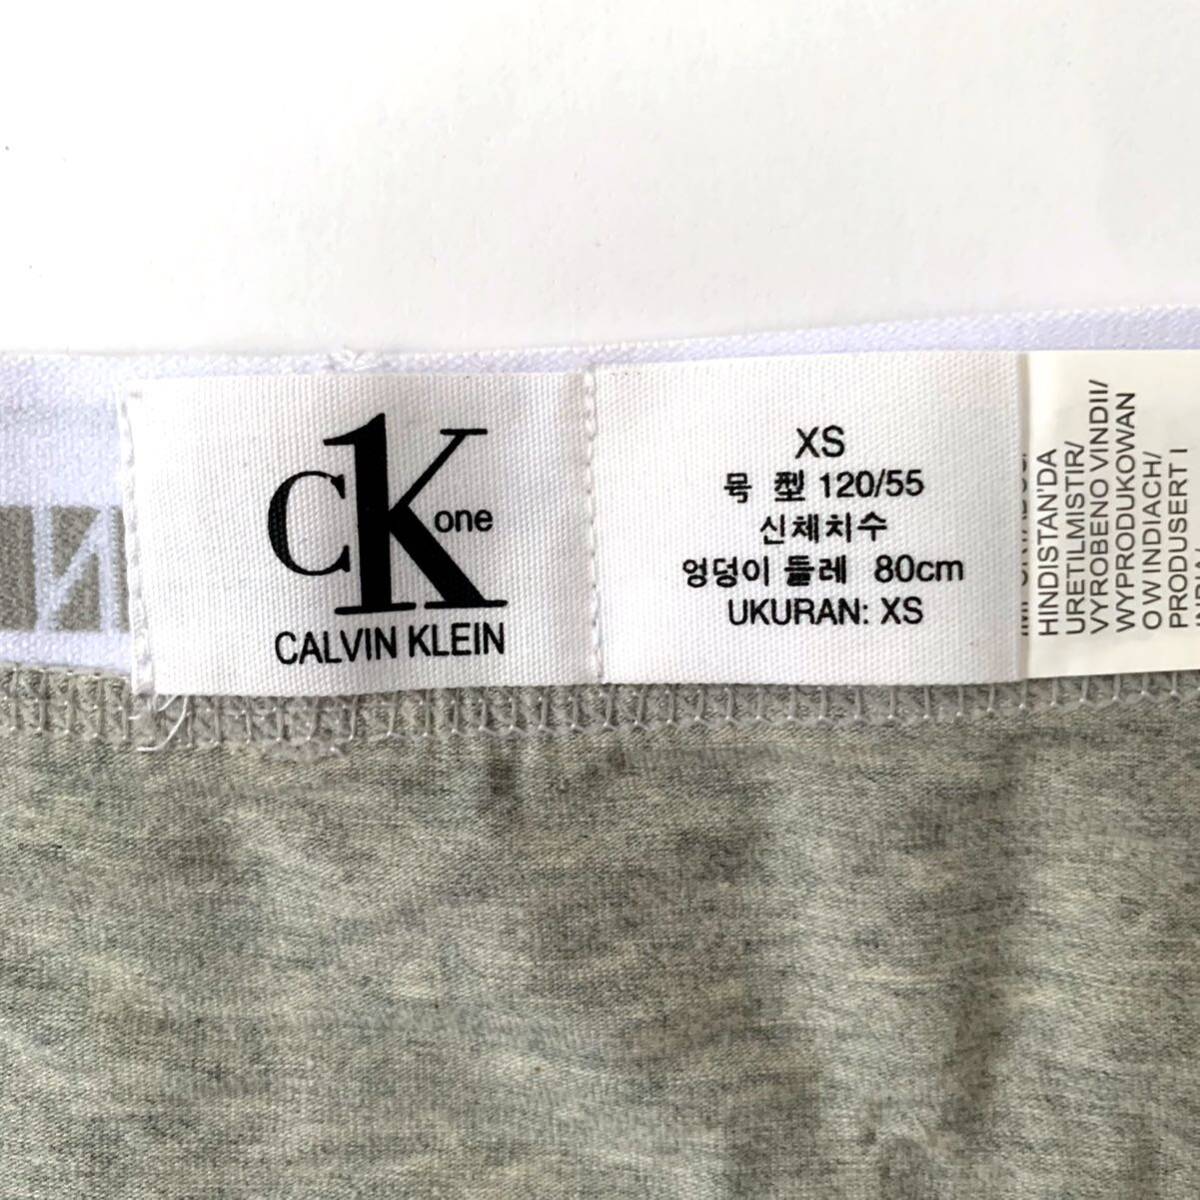 Calvin Klein ボクサーパンツ CK one XSサイズ 3枚セット ホワイト ブラック グレー 送料無料 最短発送 カルバンクライン メンズパンツの画像4